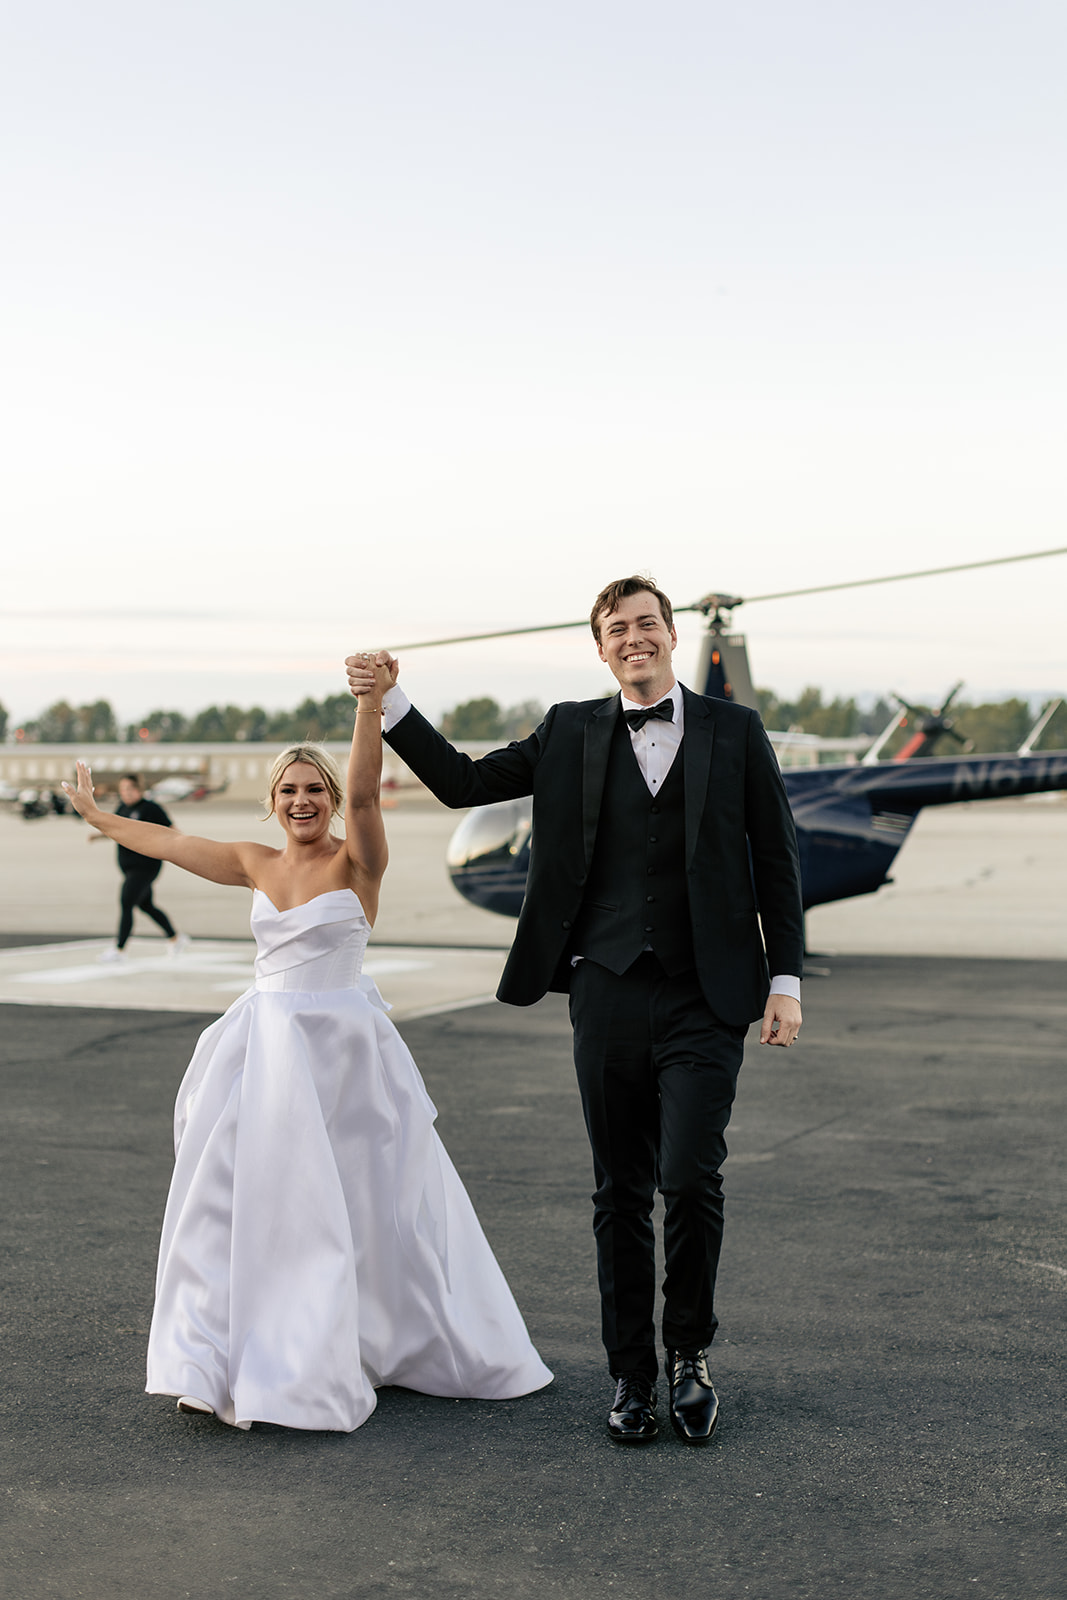 hangar 21 wedding fullerton california indoor modern wedding reception outdoor modern wedding reception helicopter